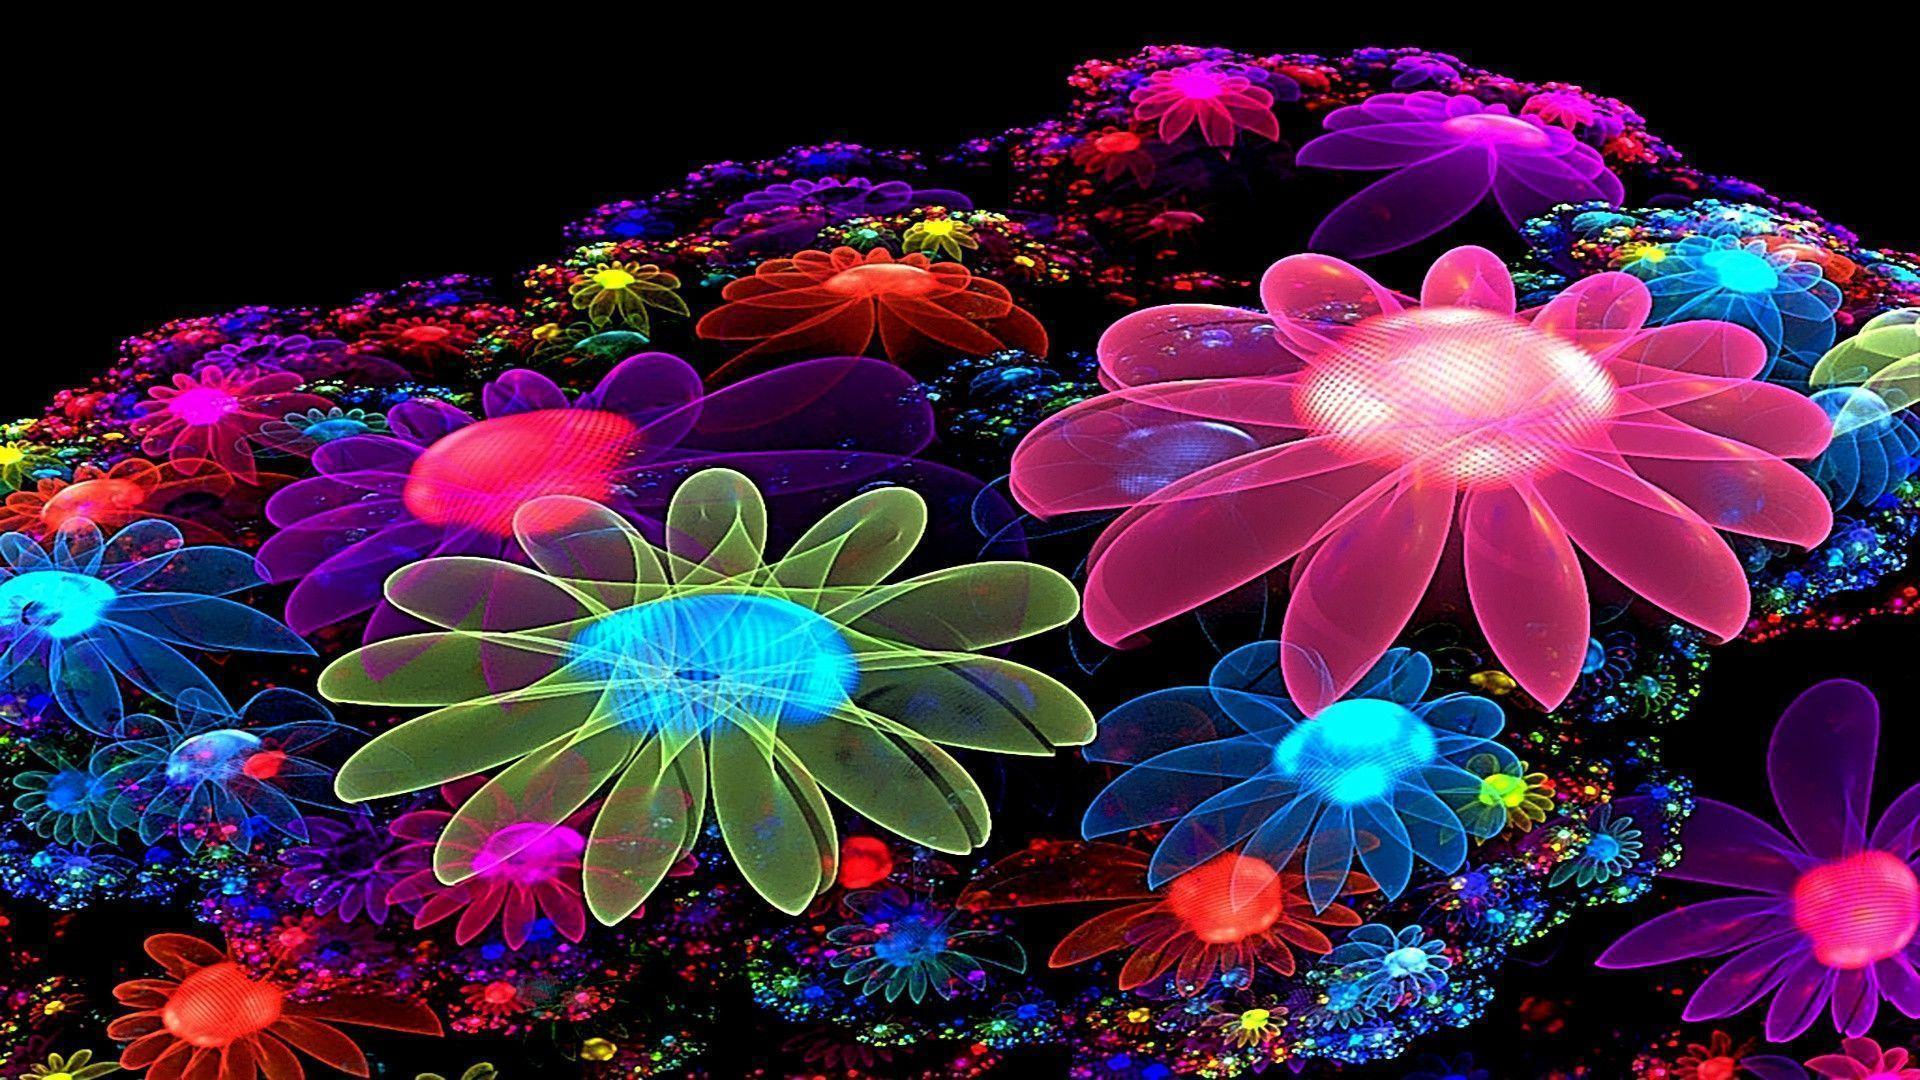 Description Of Cool Colorful Flowers Desktop Wallpaper Free